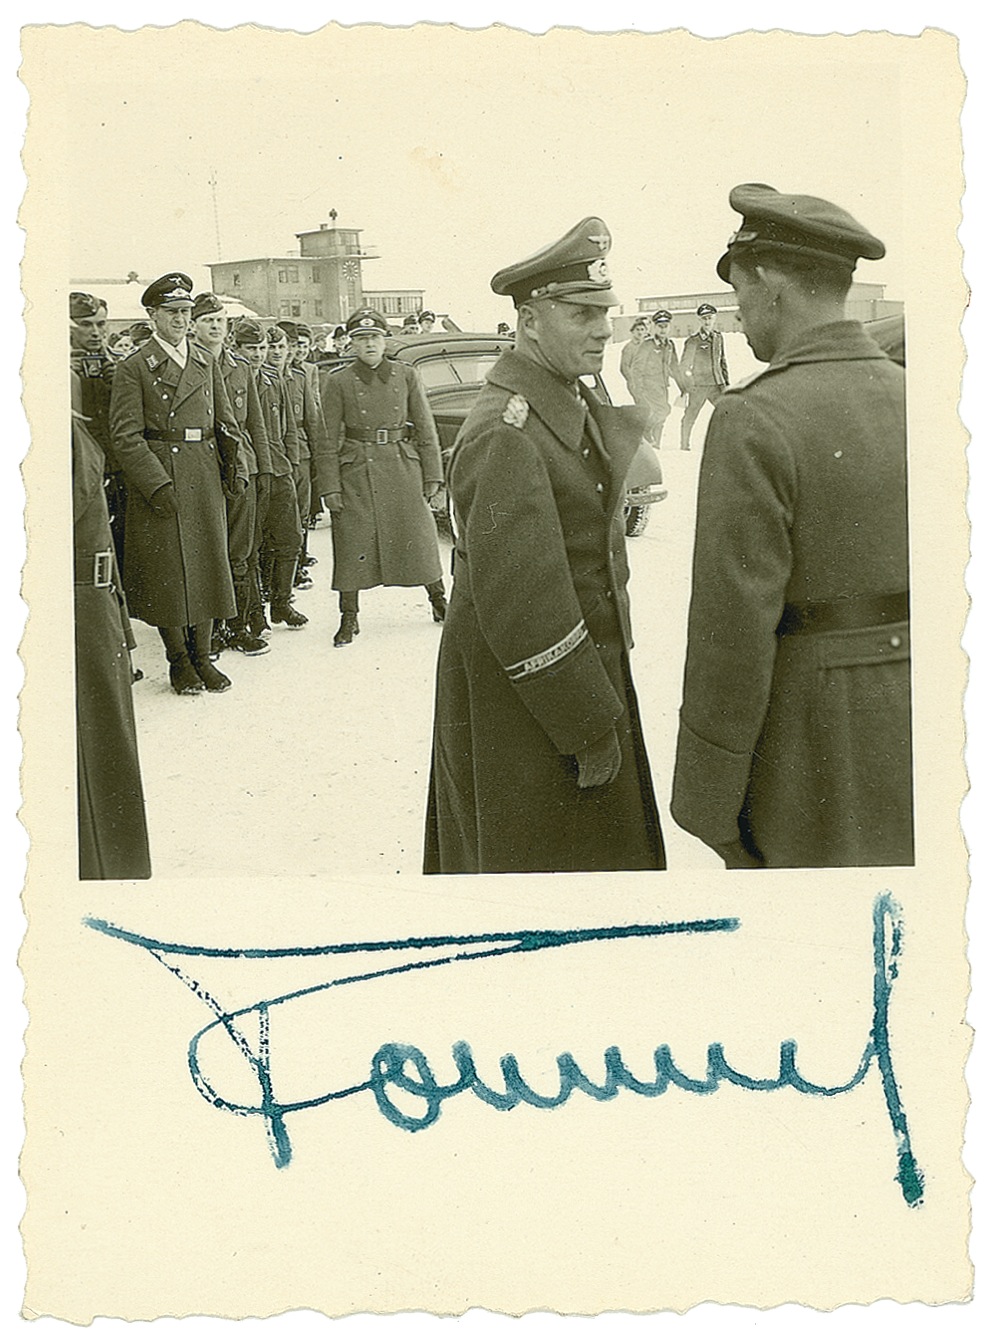 Lot #369 Erwin Rommel